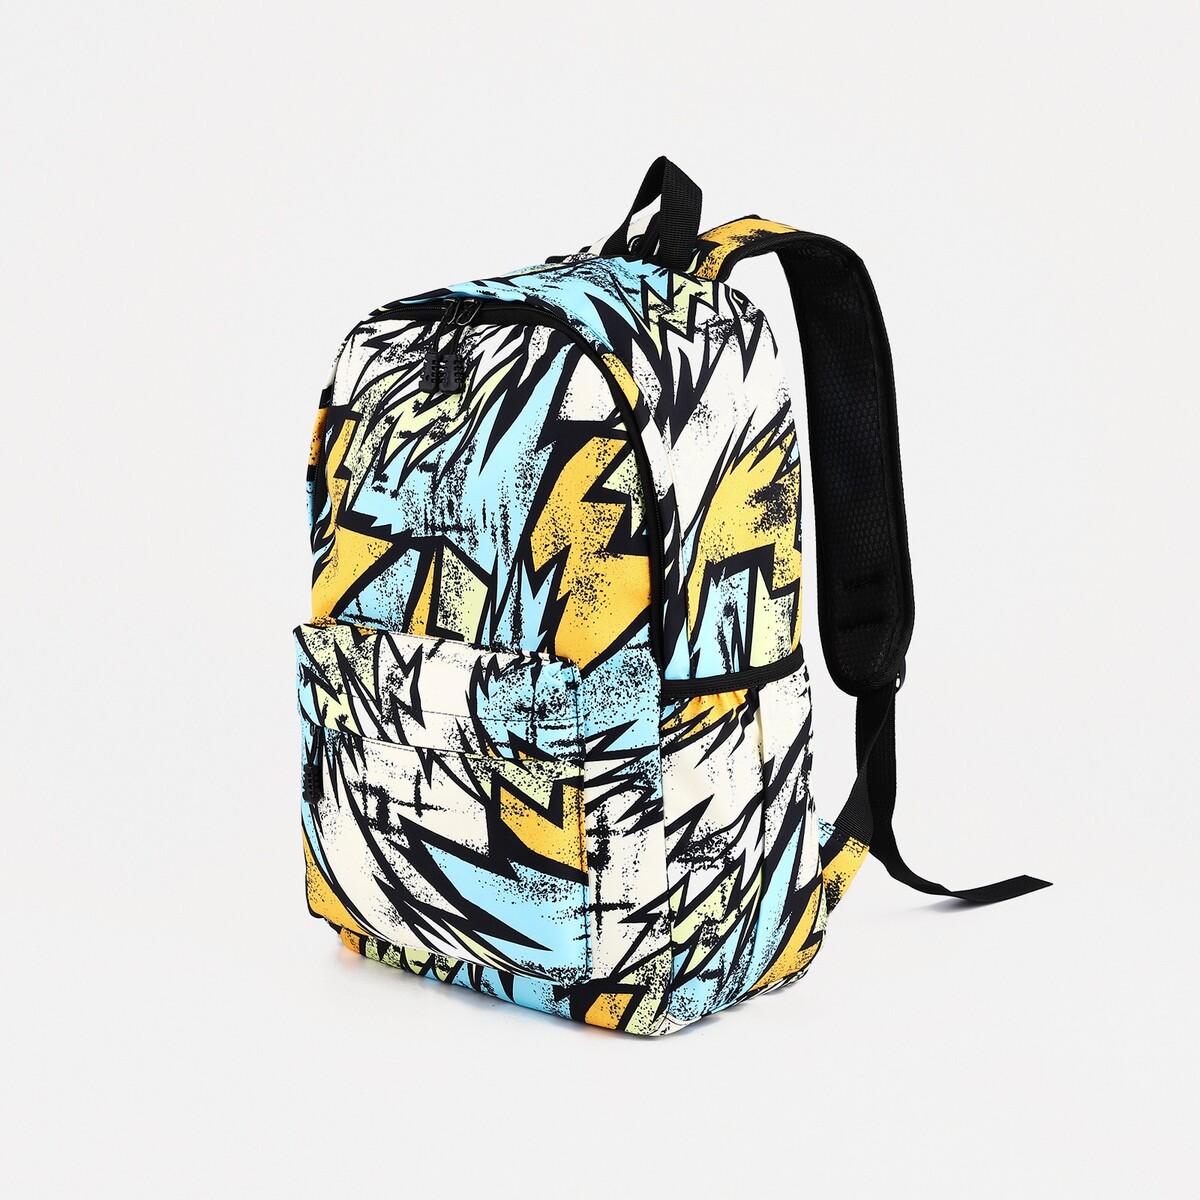 Рюкзак школьный из текстиля на молнии, 3 кармана, цвет желтый/разноцветный рюкзак школьный из текстиля 3 кармана голубой